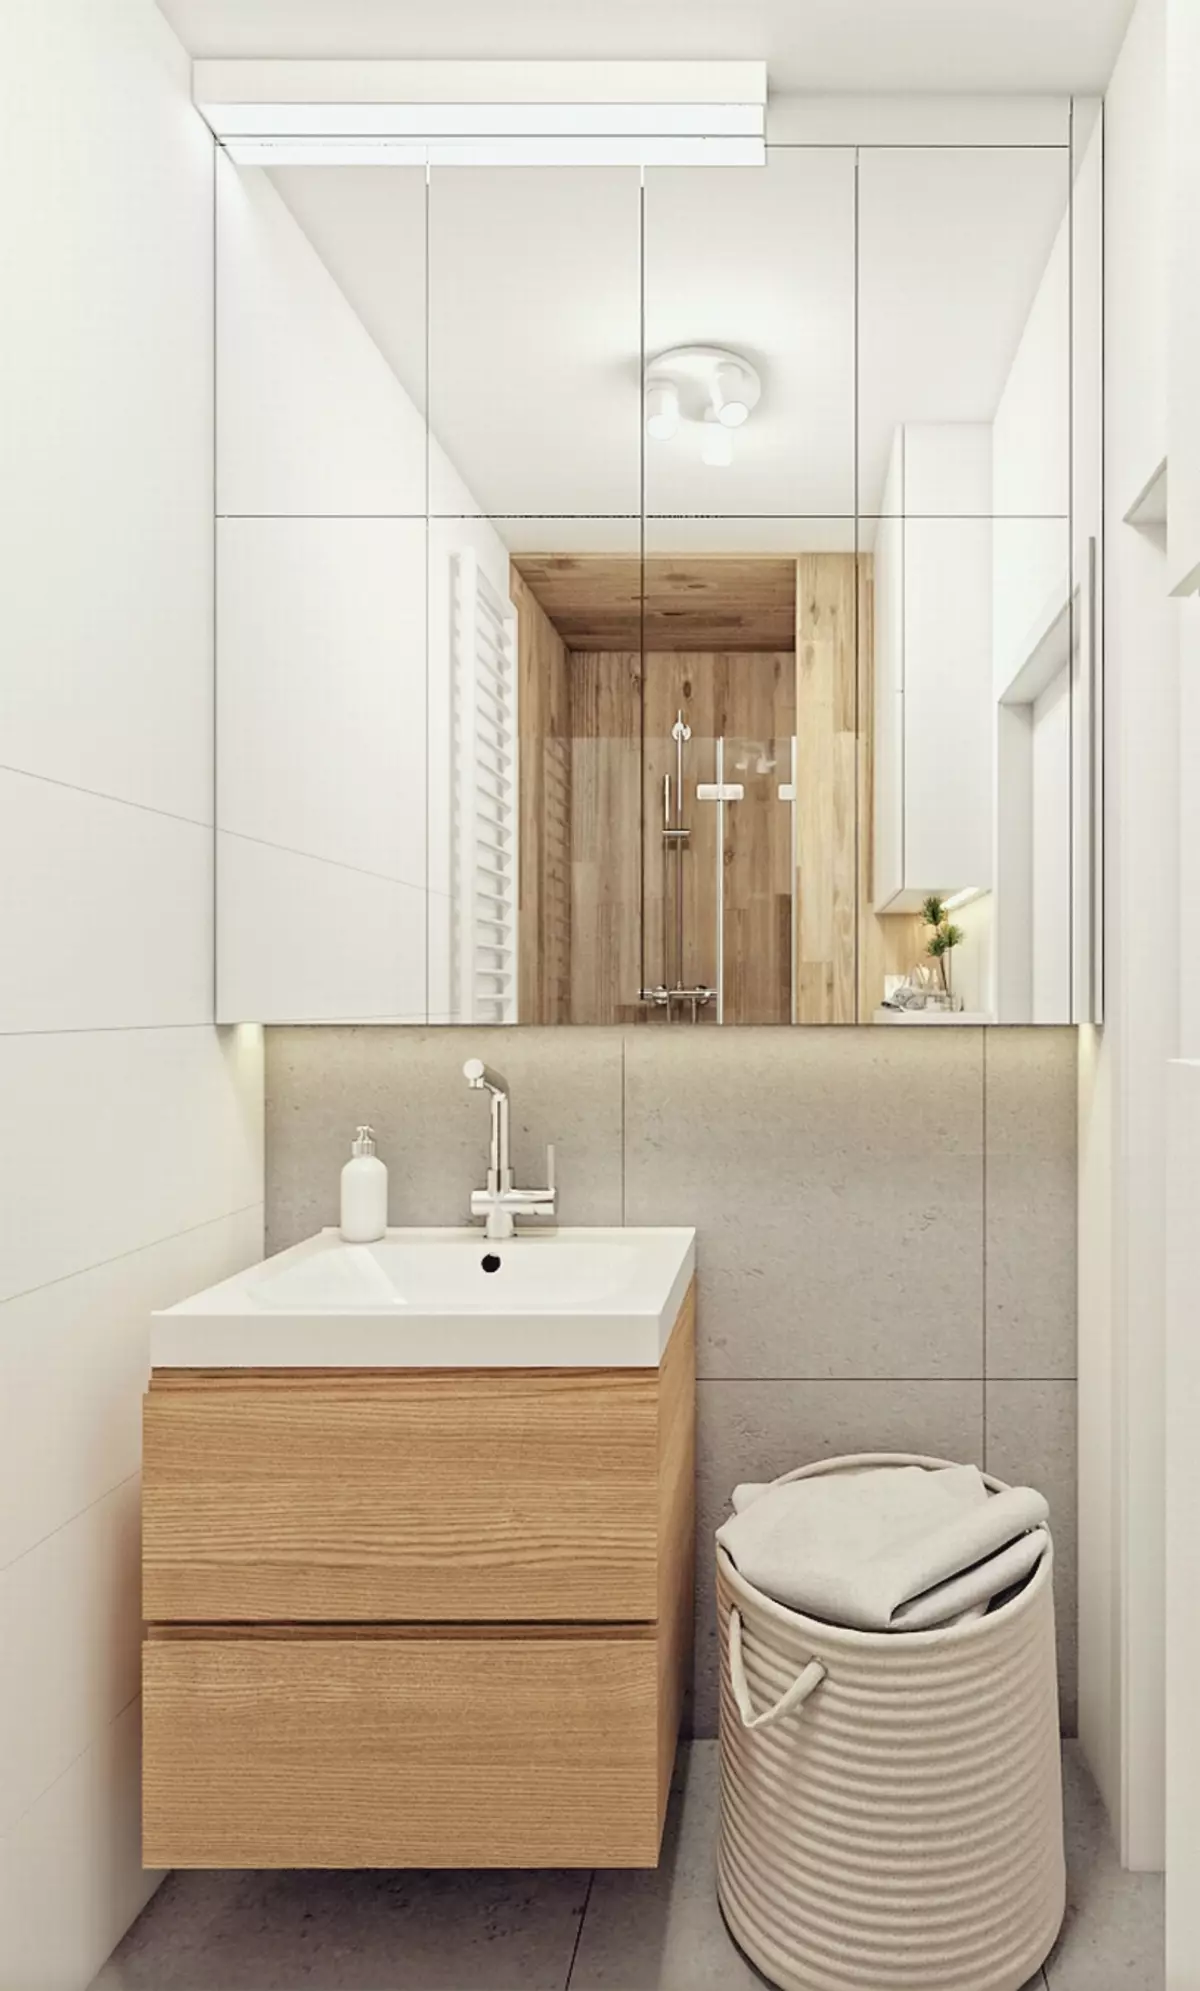 Snyggt badrum i modern stil: foto, idé